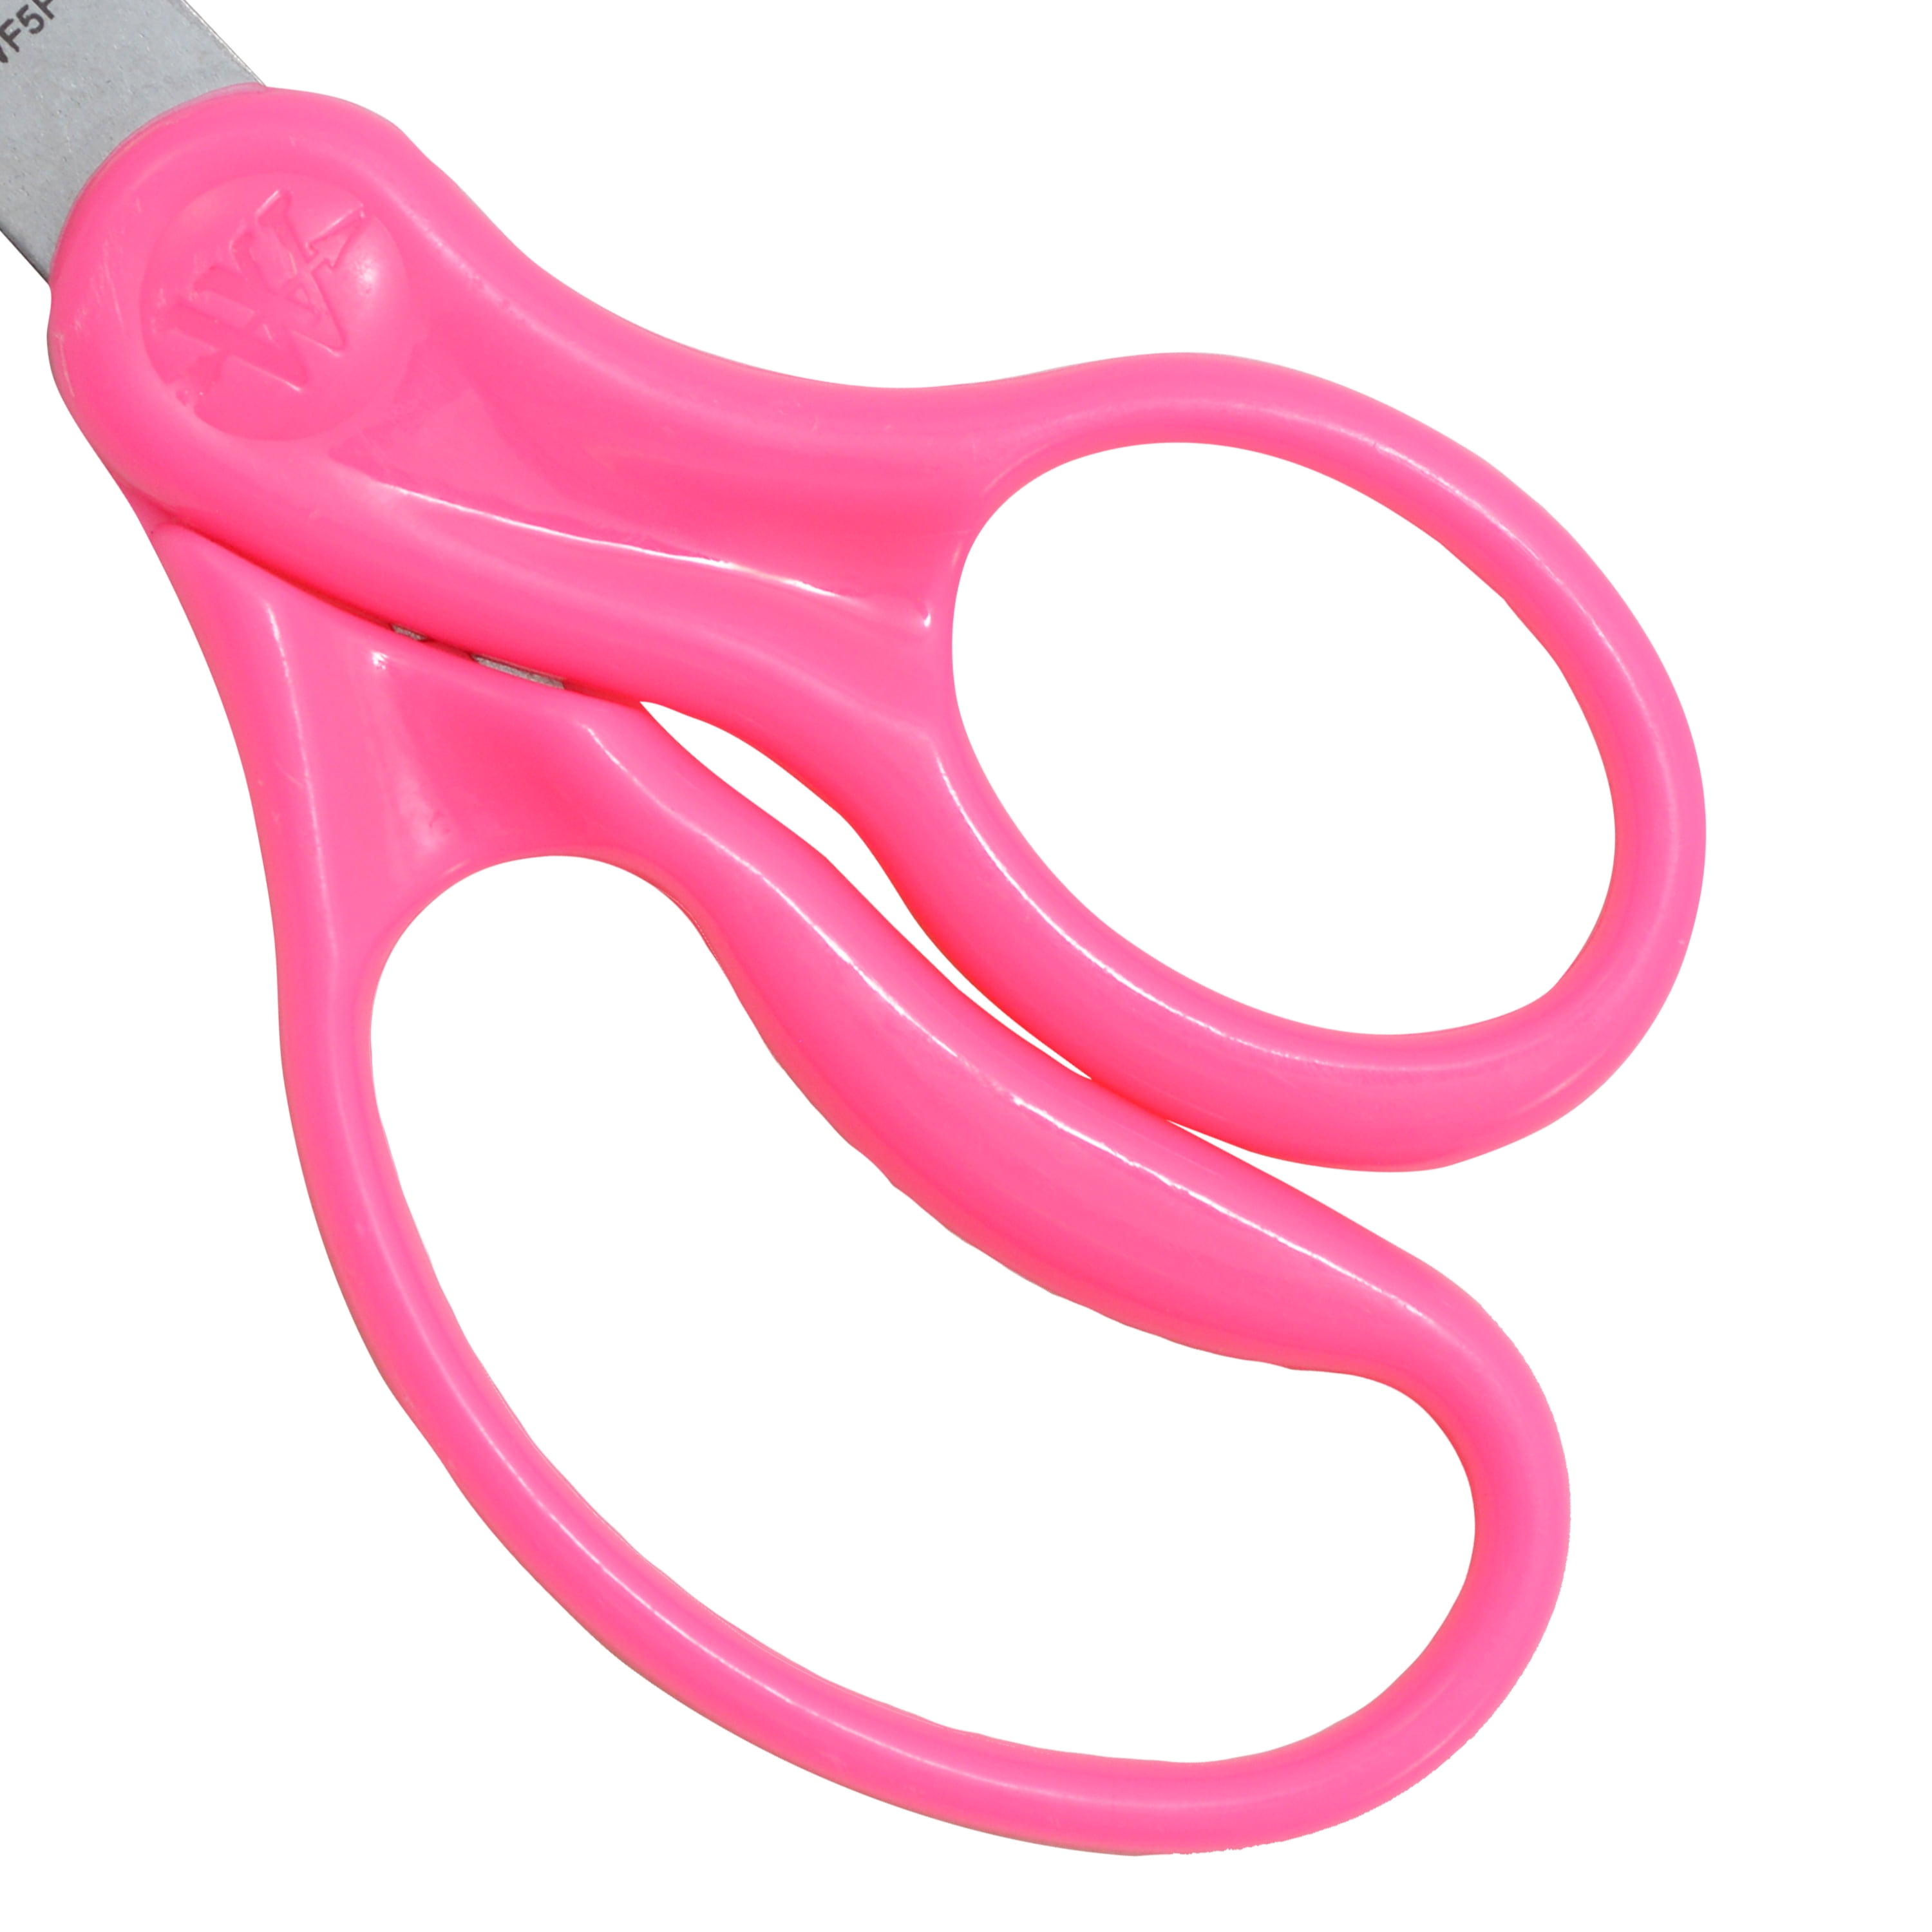 Westcott Classic Kids Scissors, Blunt Tip, 5 inch, Neon Pink (15967)